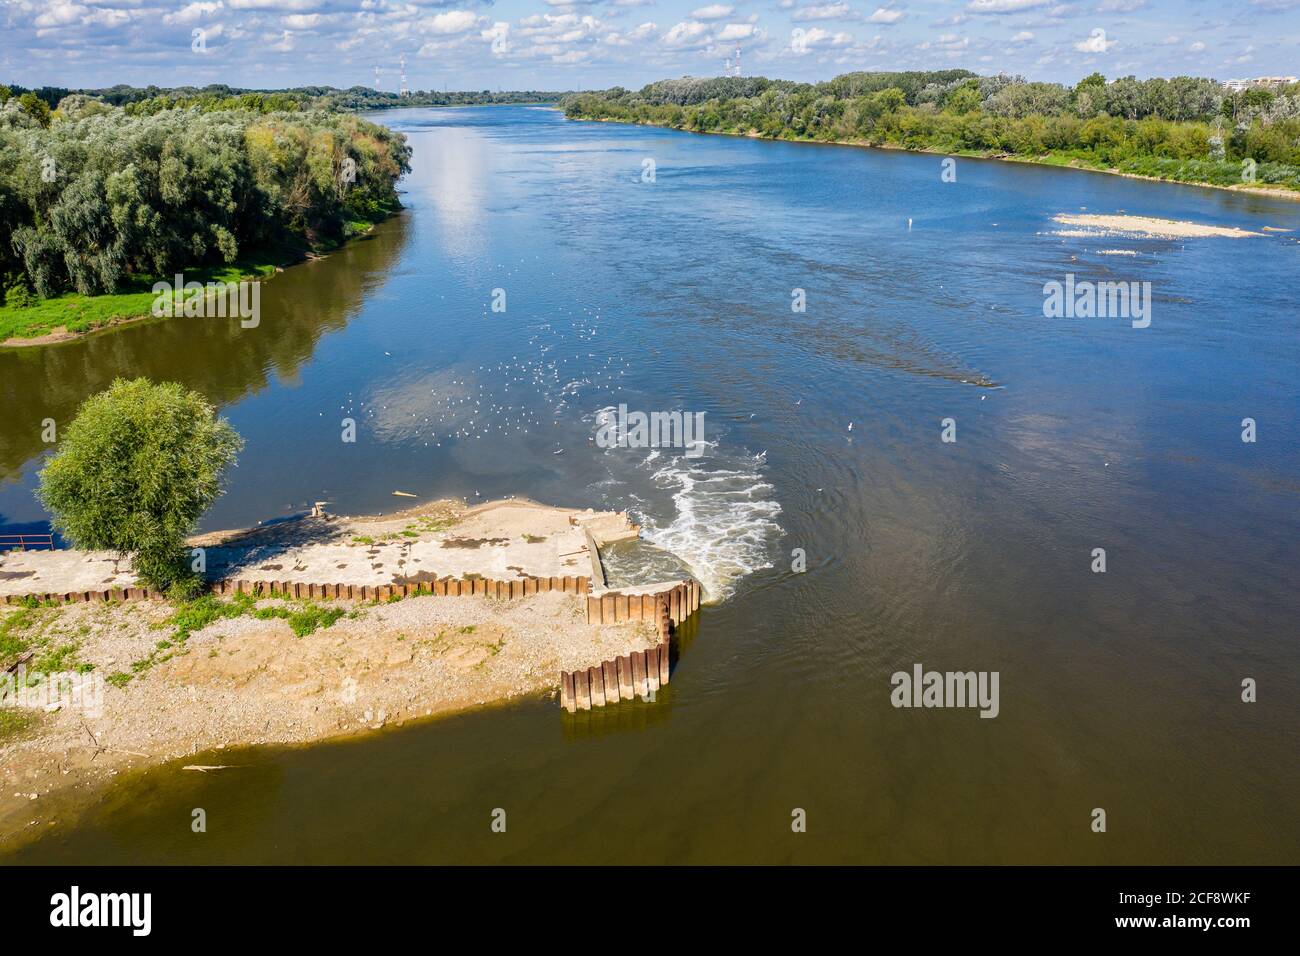 Abfluss von Abwasser in den Fluss, ökologische Katastrophe nach Ausfall der Kläranlage, Warschau, Polen Stockfoto